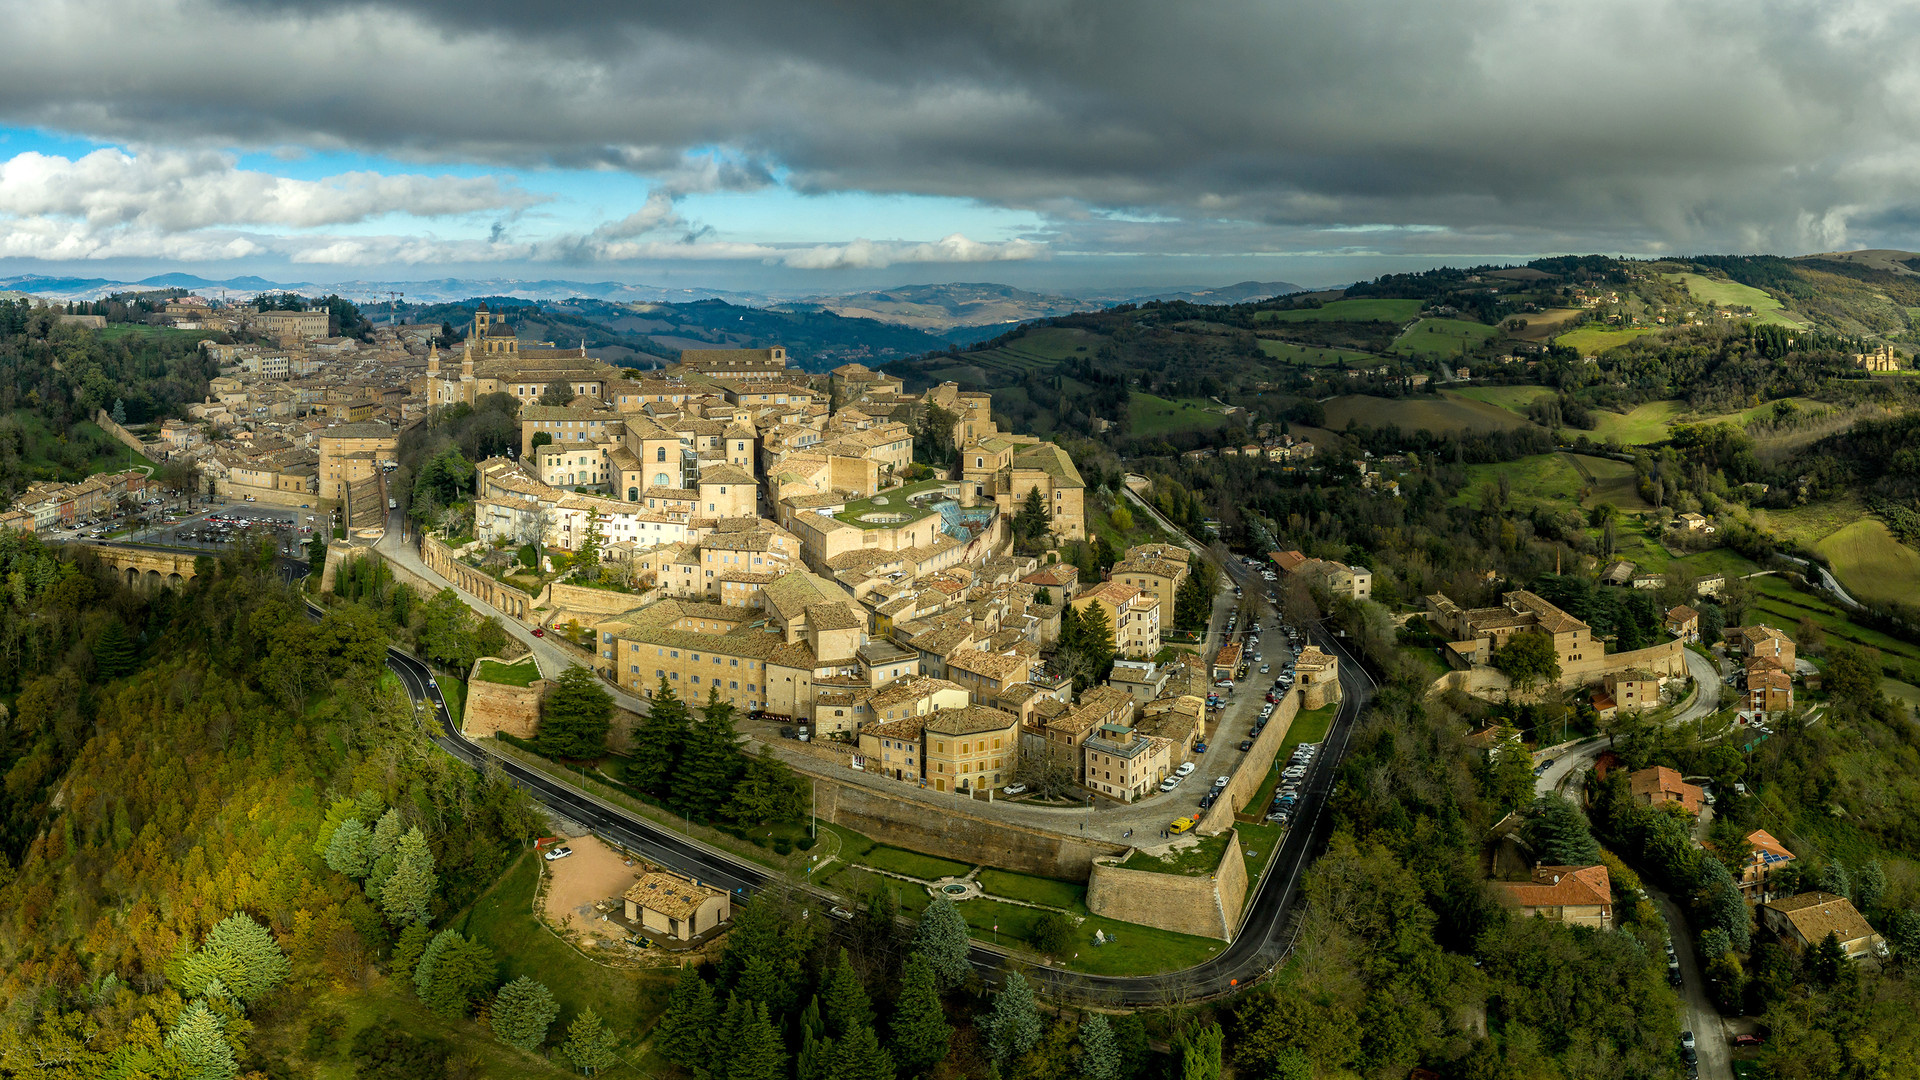 Thành phố Urbino hầu như không thay đổi kể từ thế kỷ 15. Ảnh: CNN.